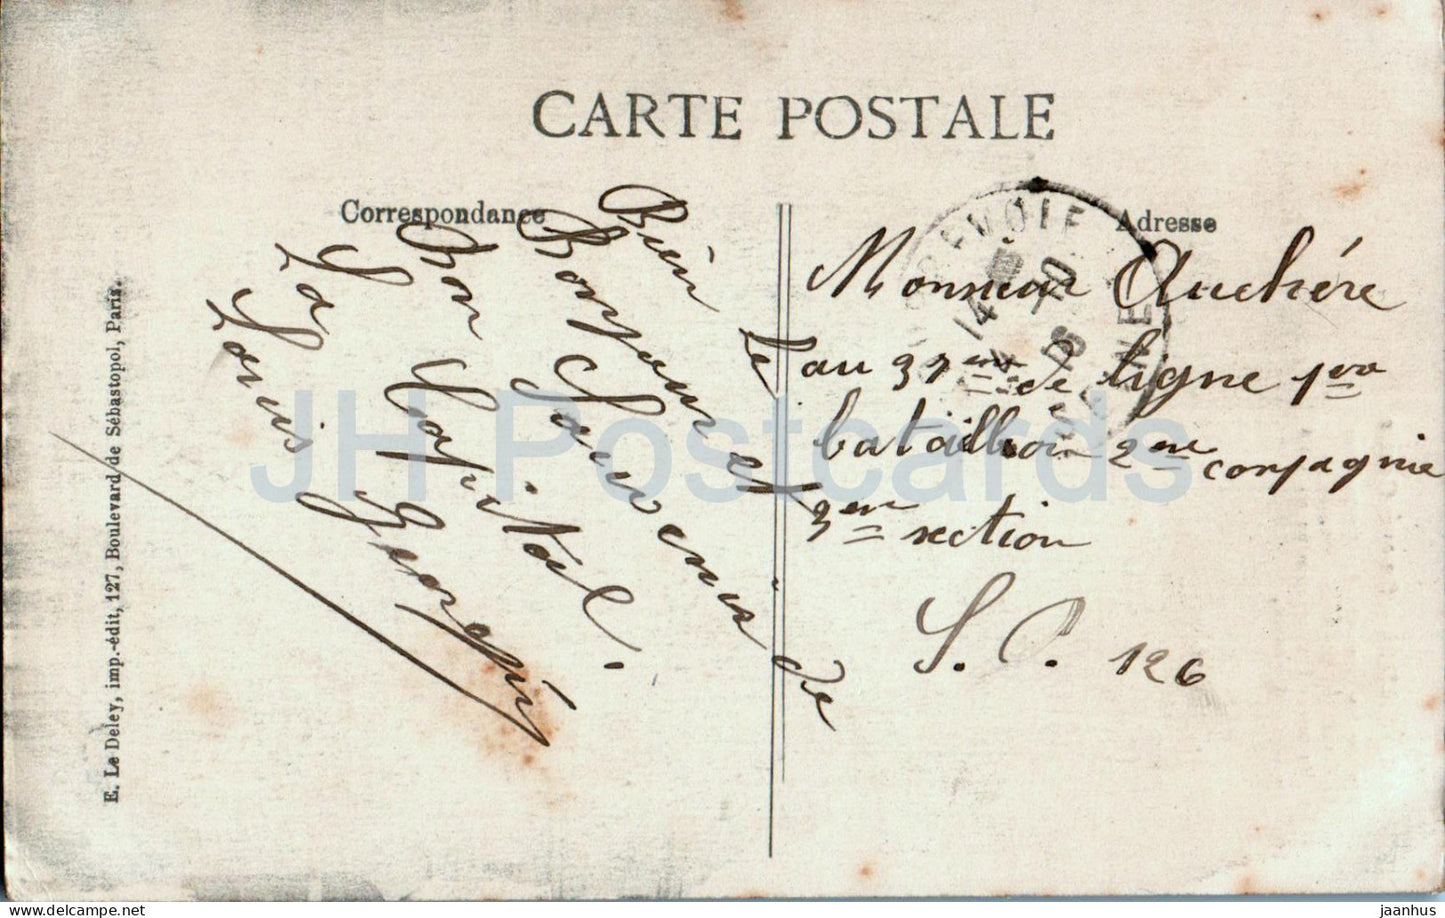 Paris - Sacre Coeur - Basilique - Kathedrale - 4032 - alte Postkarte - Frankreich - gebraucht 